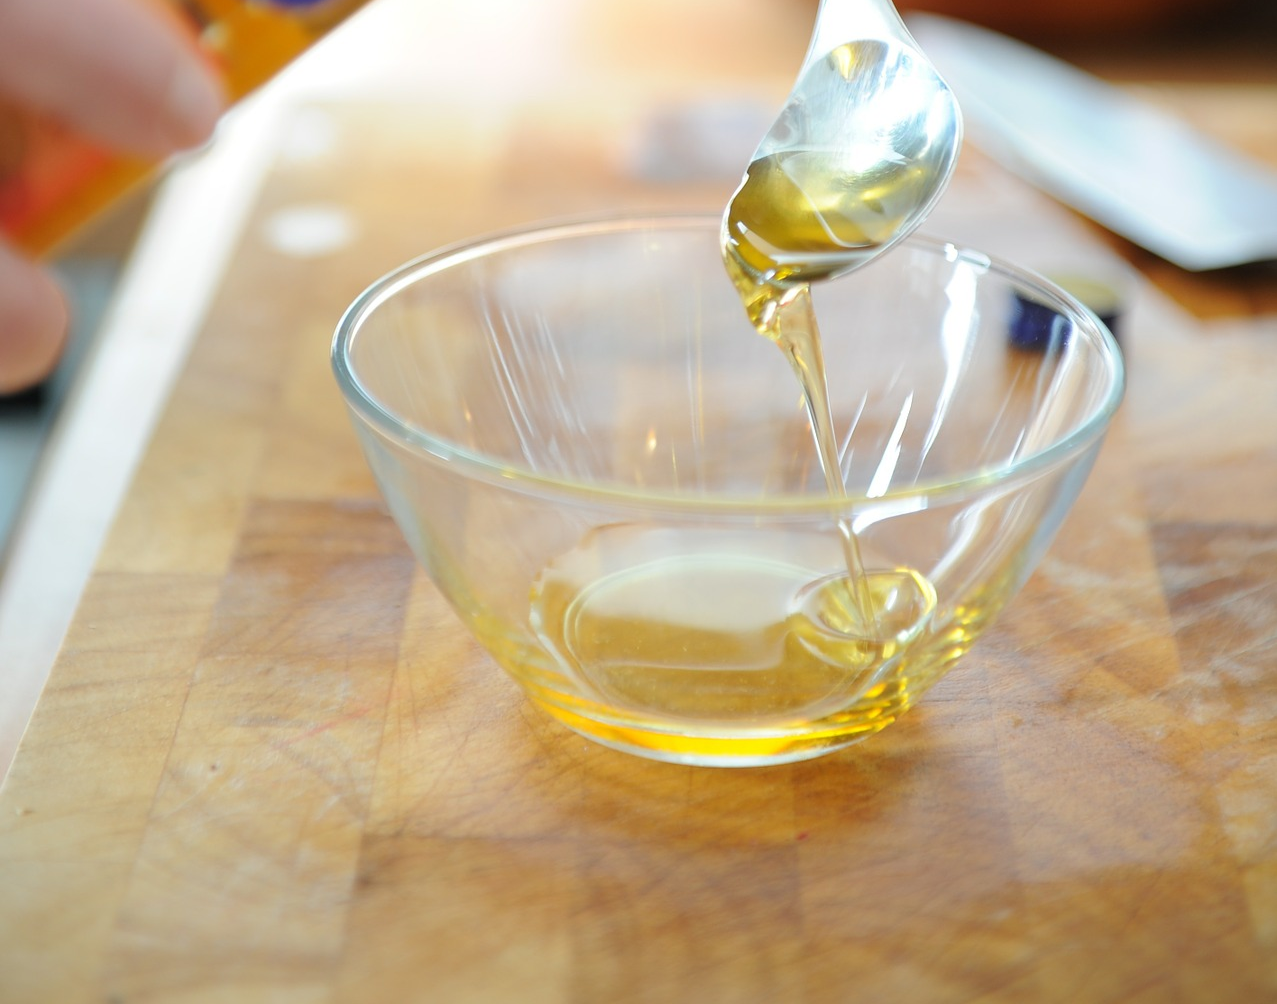 Сколько грамм в ложке оливкового масла. Растительное масло в ложке. Растительное масло 2 столовые ложки. Столовая ложка растительного масла. Подсолнечное масло в ложке.